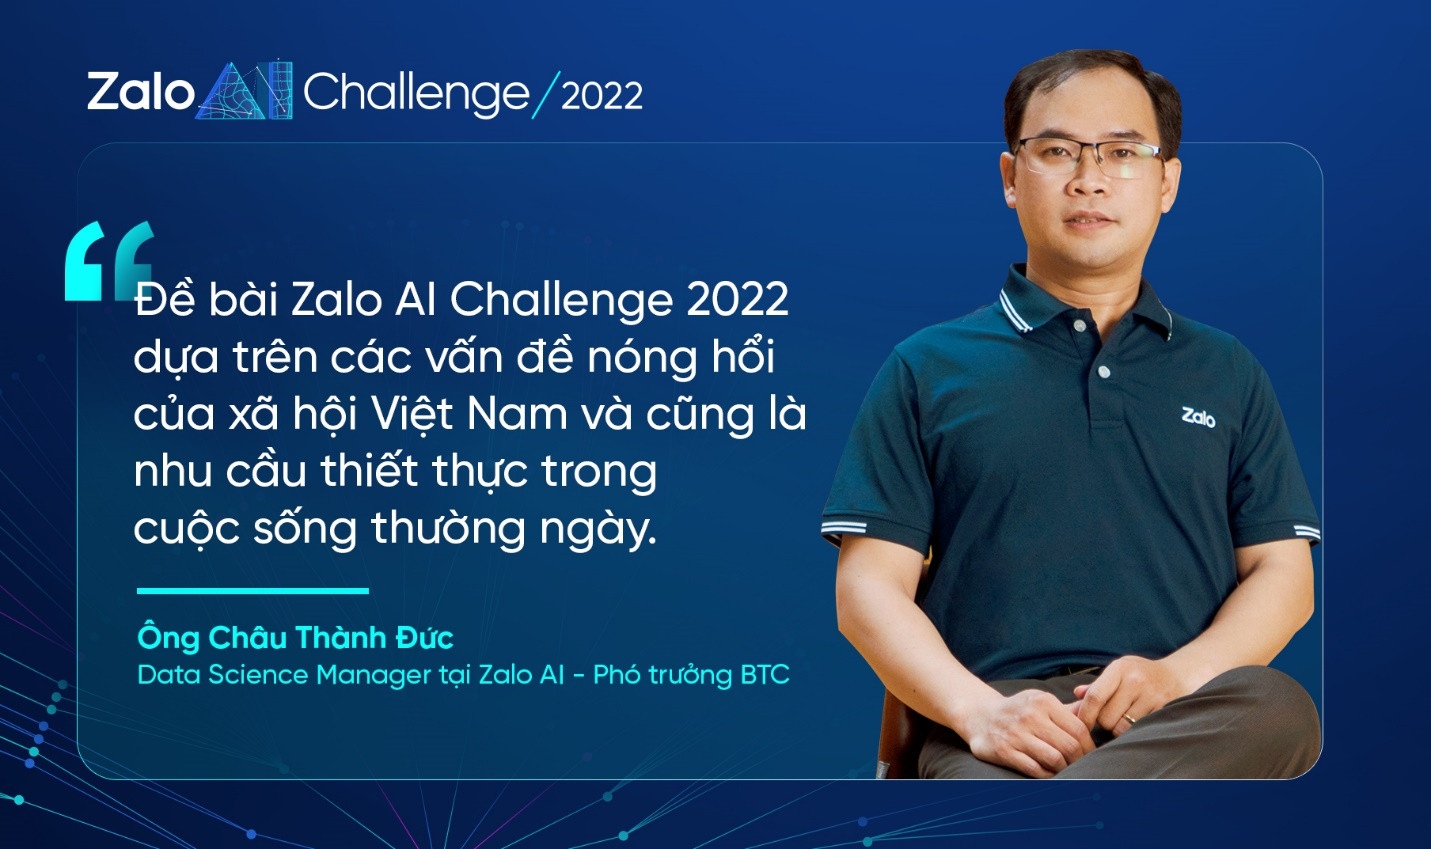 Mất 4 tháng, với sự hỗ trợ từ 1.000 người để xây dựng đề thi cho Zalo AI Challenge - Ảnh 2.